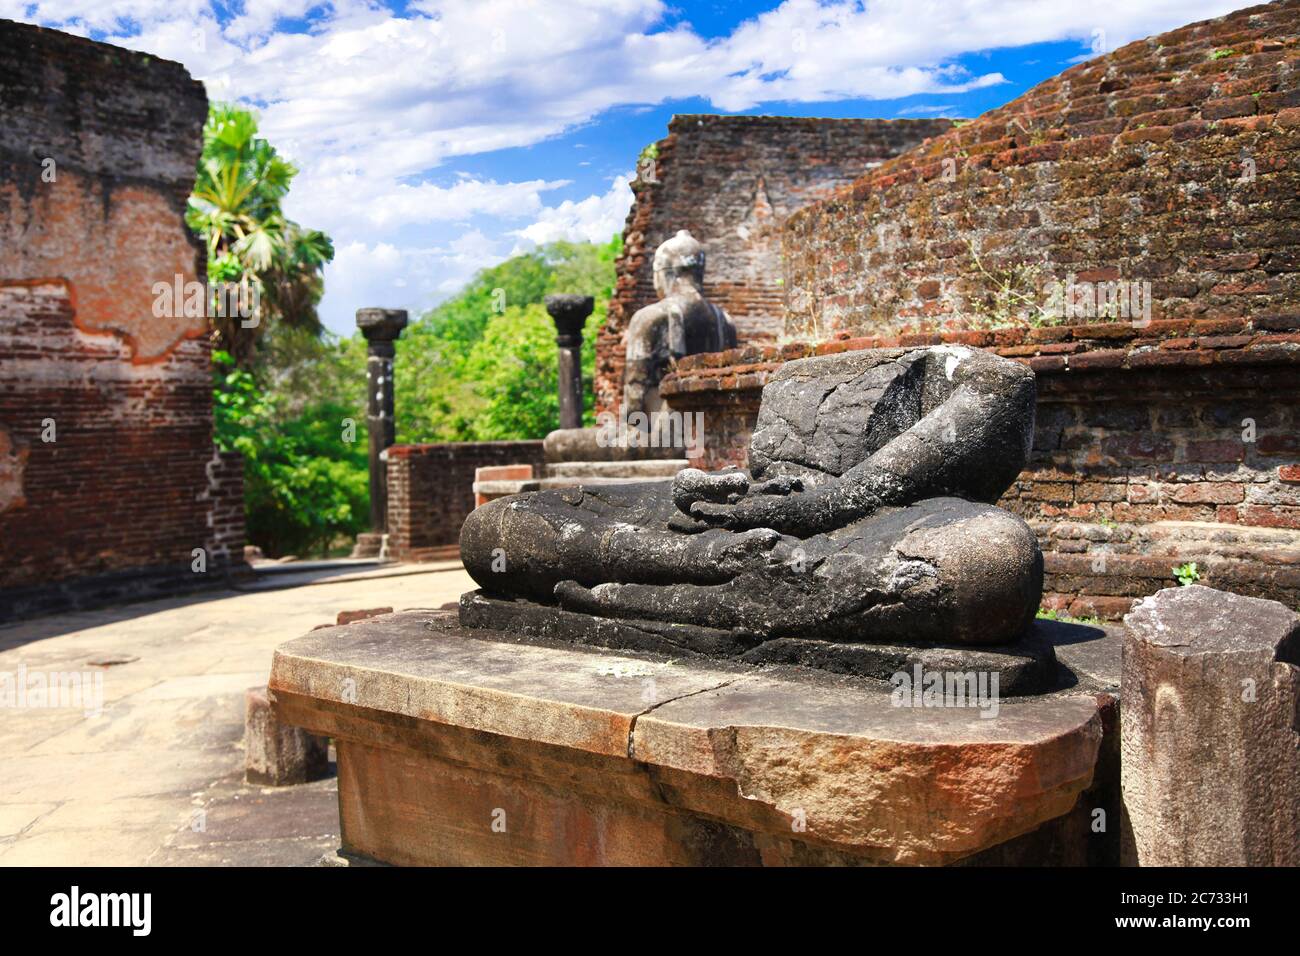 Voyage et monuments au Sri Lanka - ancienne ville de Polonnaruwa, site classé au patrimoine mondial de l'UNESCO. Ruines de la statue de Bouddha dans le temple de Vatadage Banque D'Images